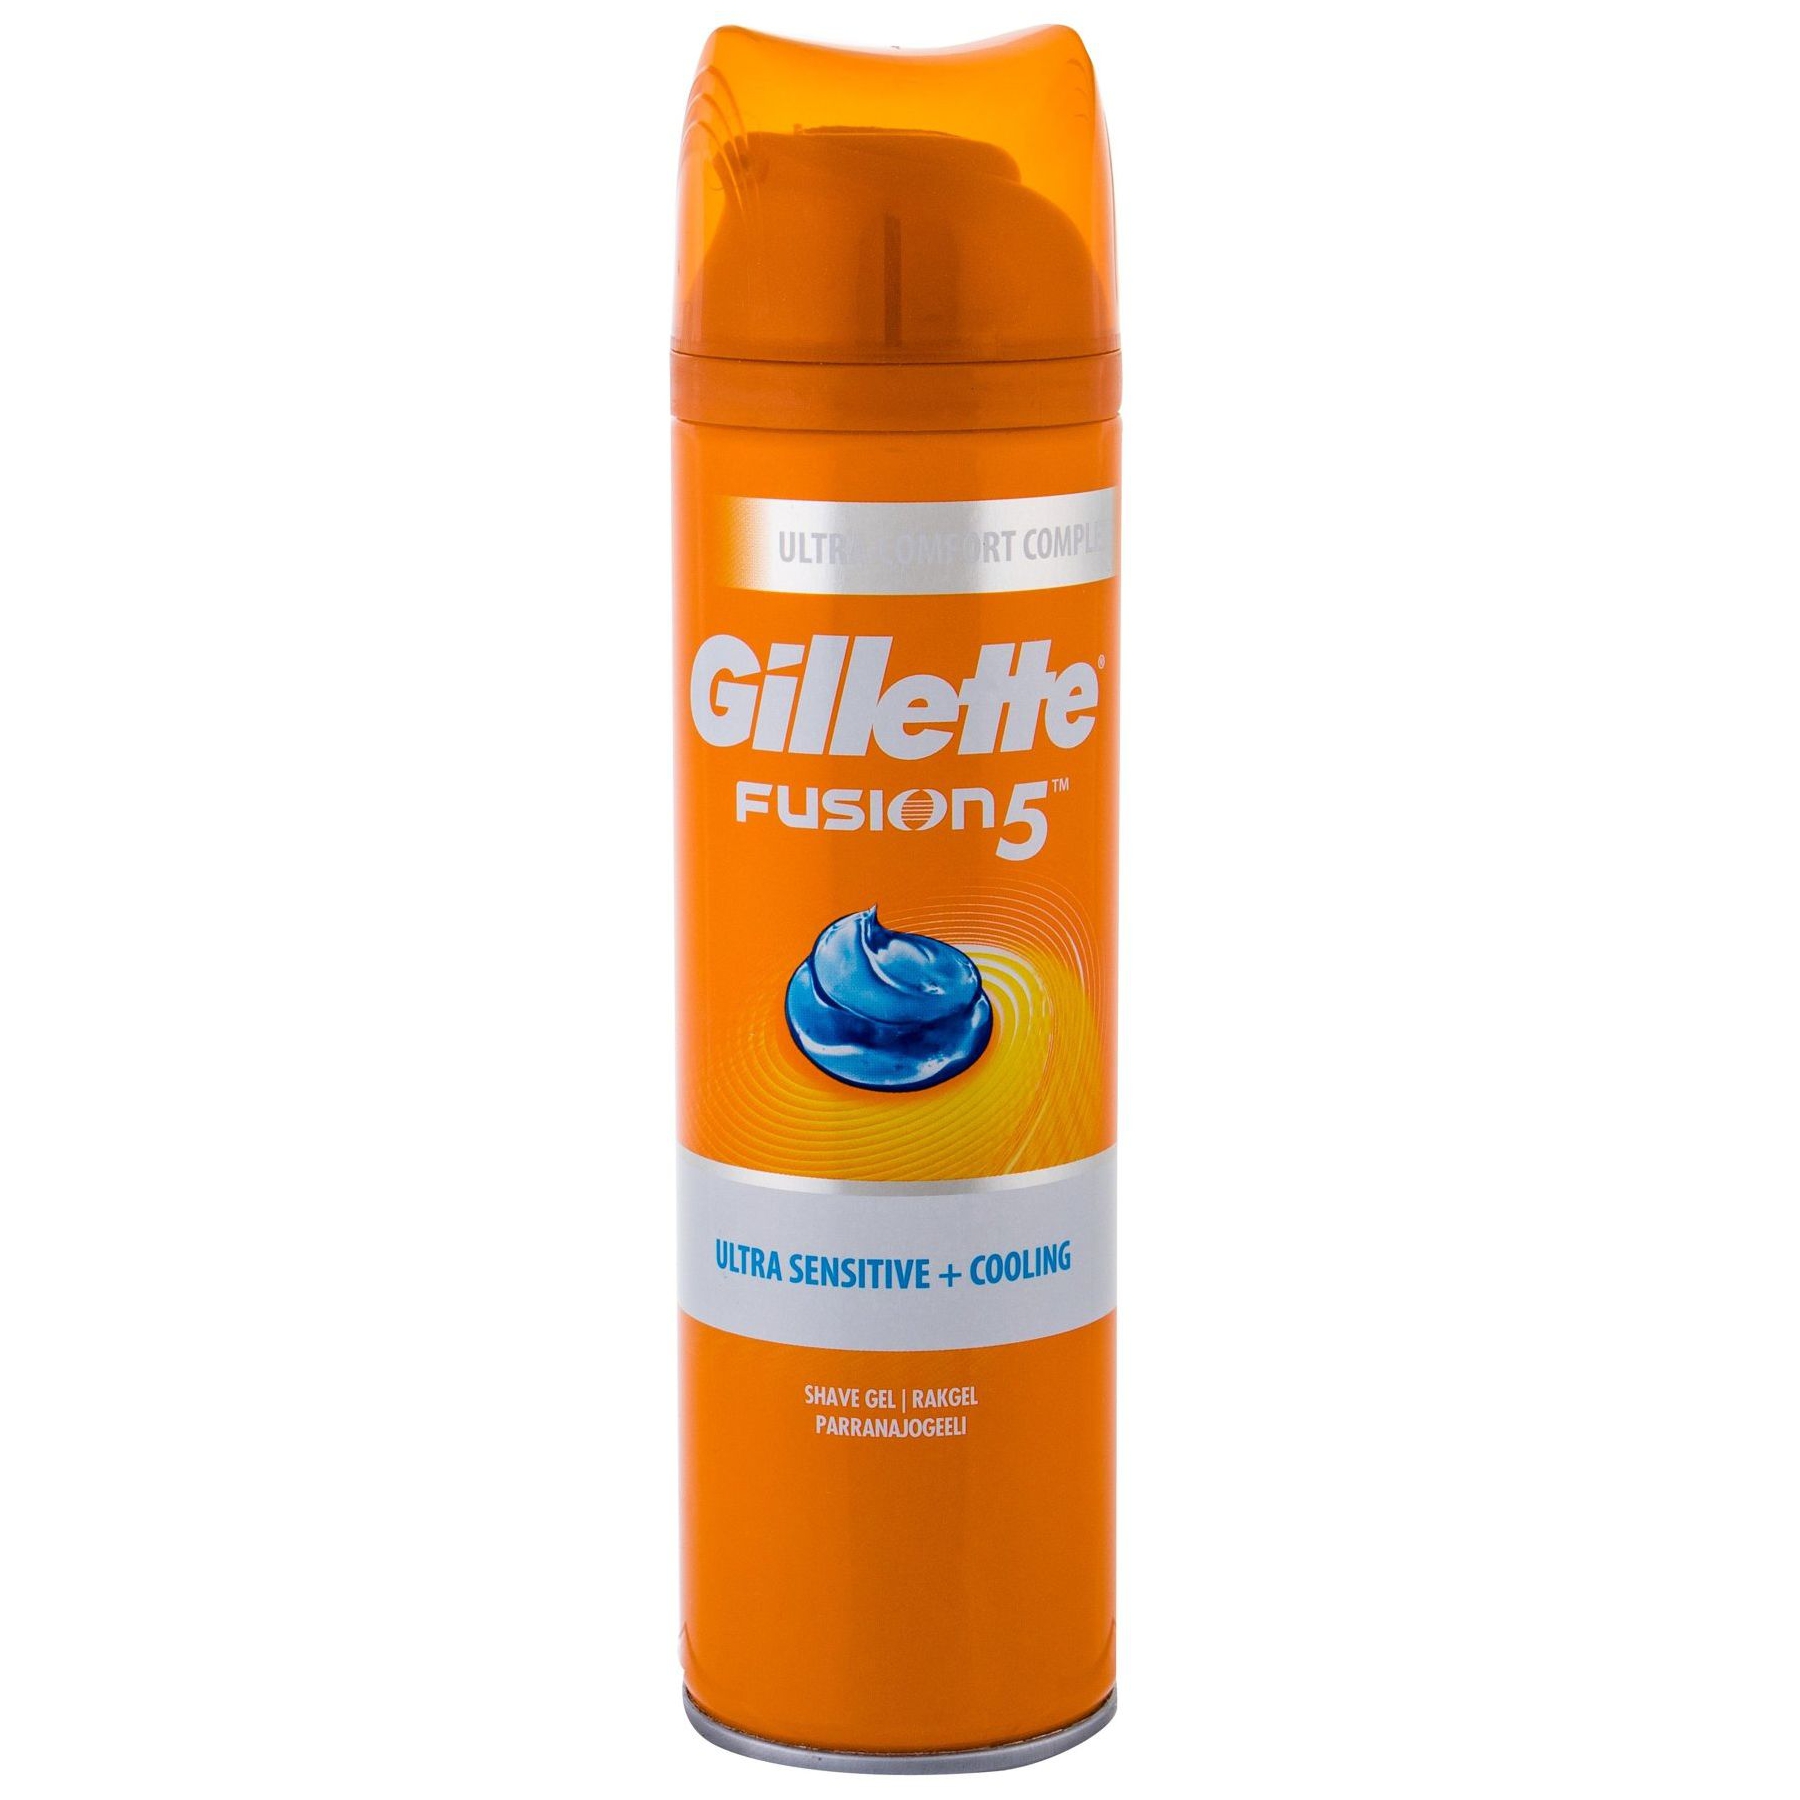 Gillette kosmetyki dla mężczyzn